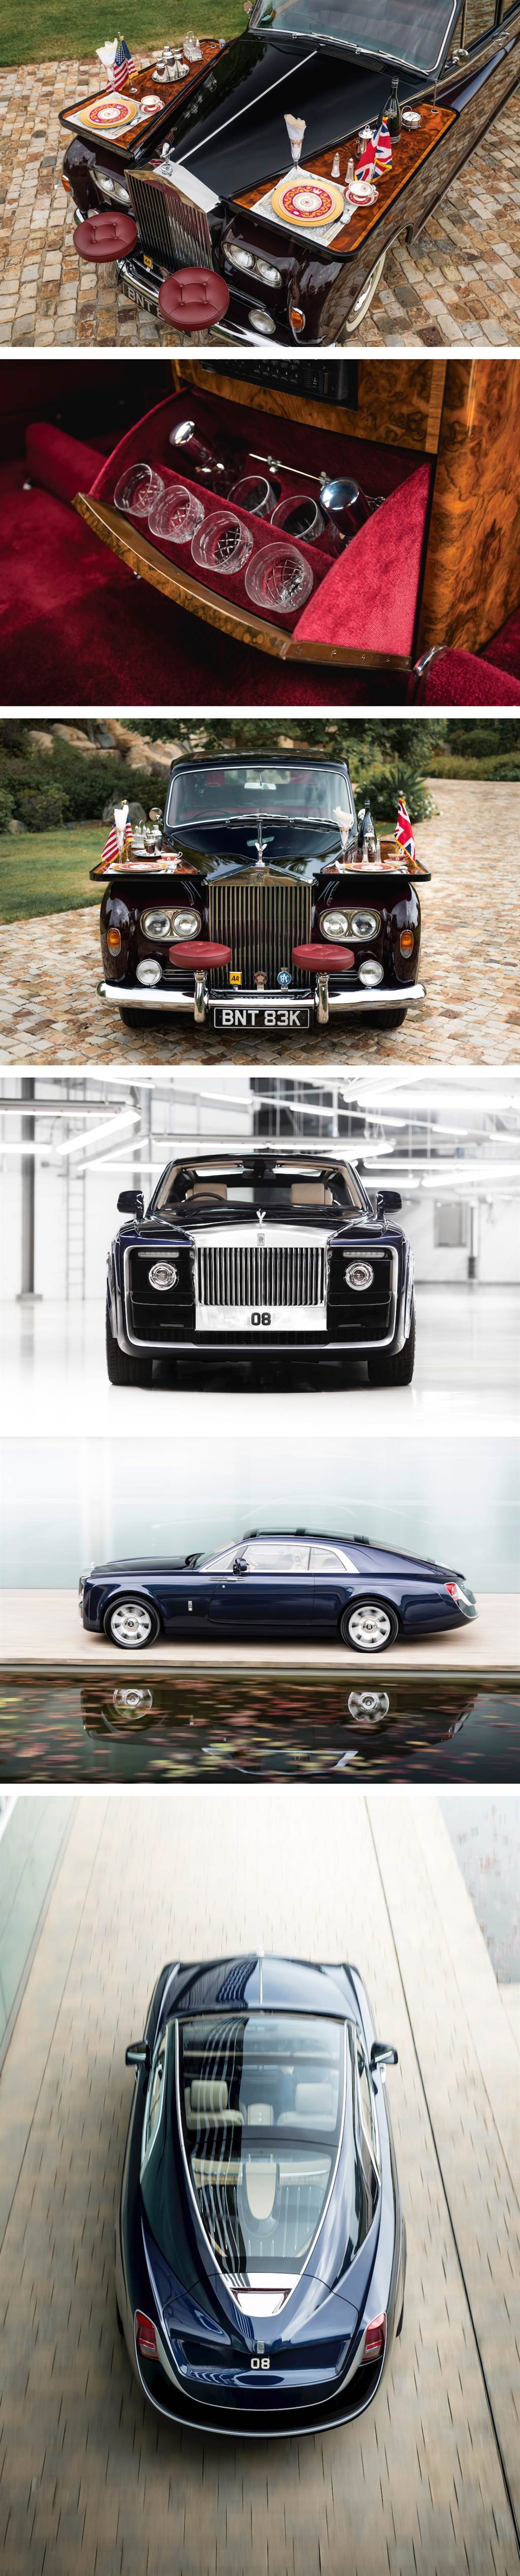 重返那獨一無二的美好時光，Rolls-Royce 客製化車體 Coachbuild 業務重啟！
